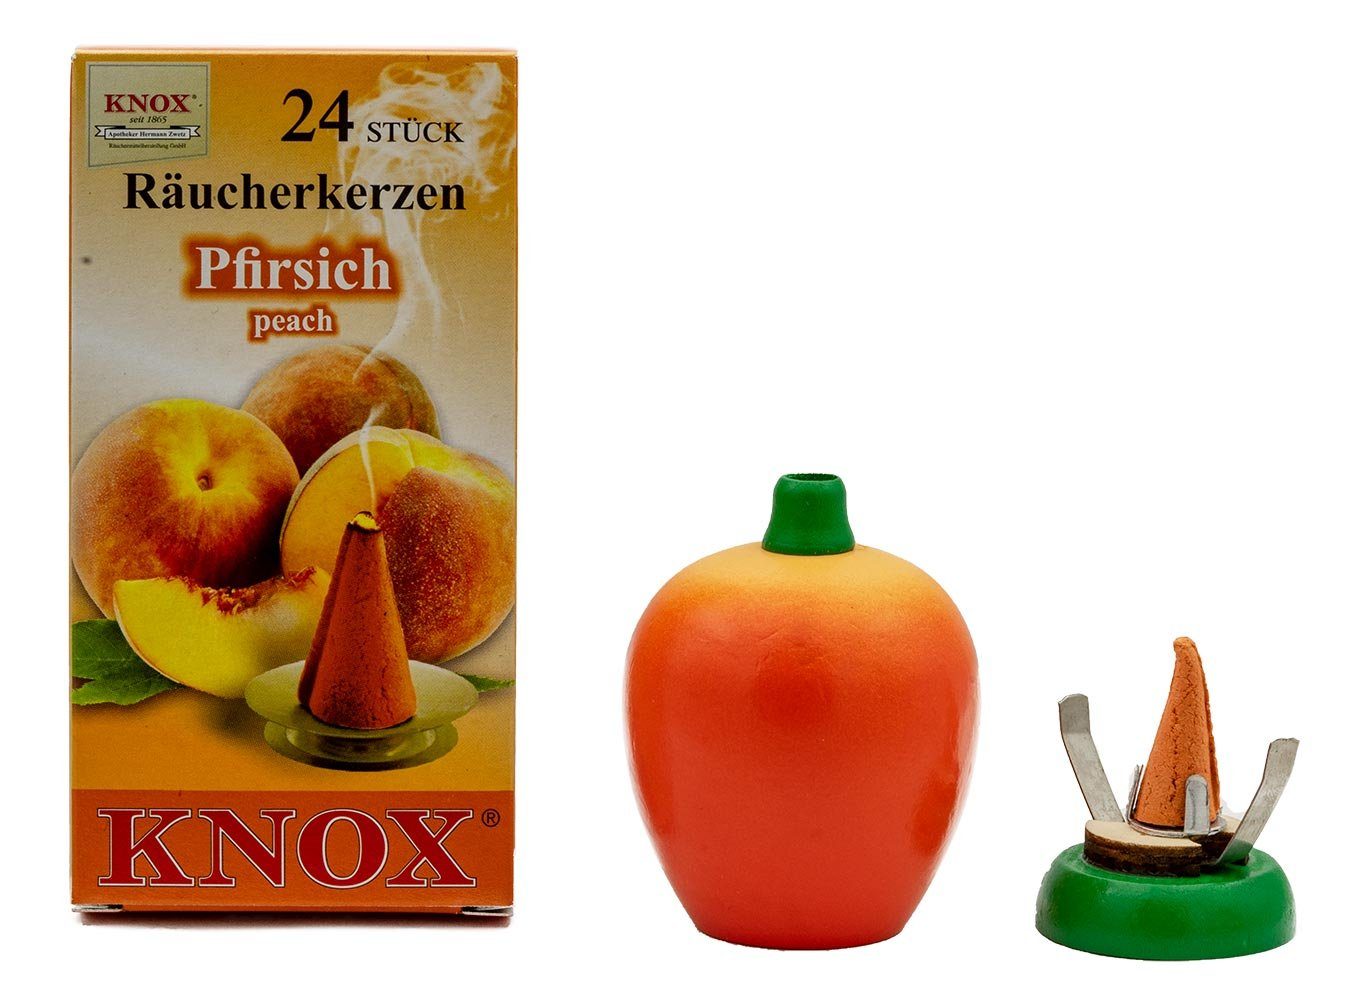 KNOX Räucherhaus Pfirsich Set, Pfirsich Räucherfigur inkl. 24 Räucherkerzen mit Pfirsich-Duft